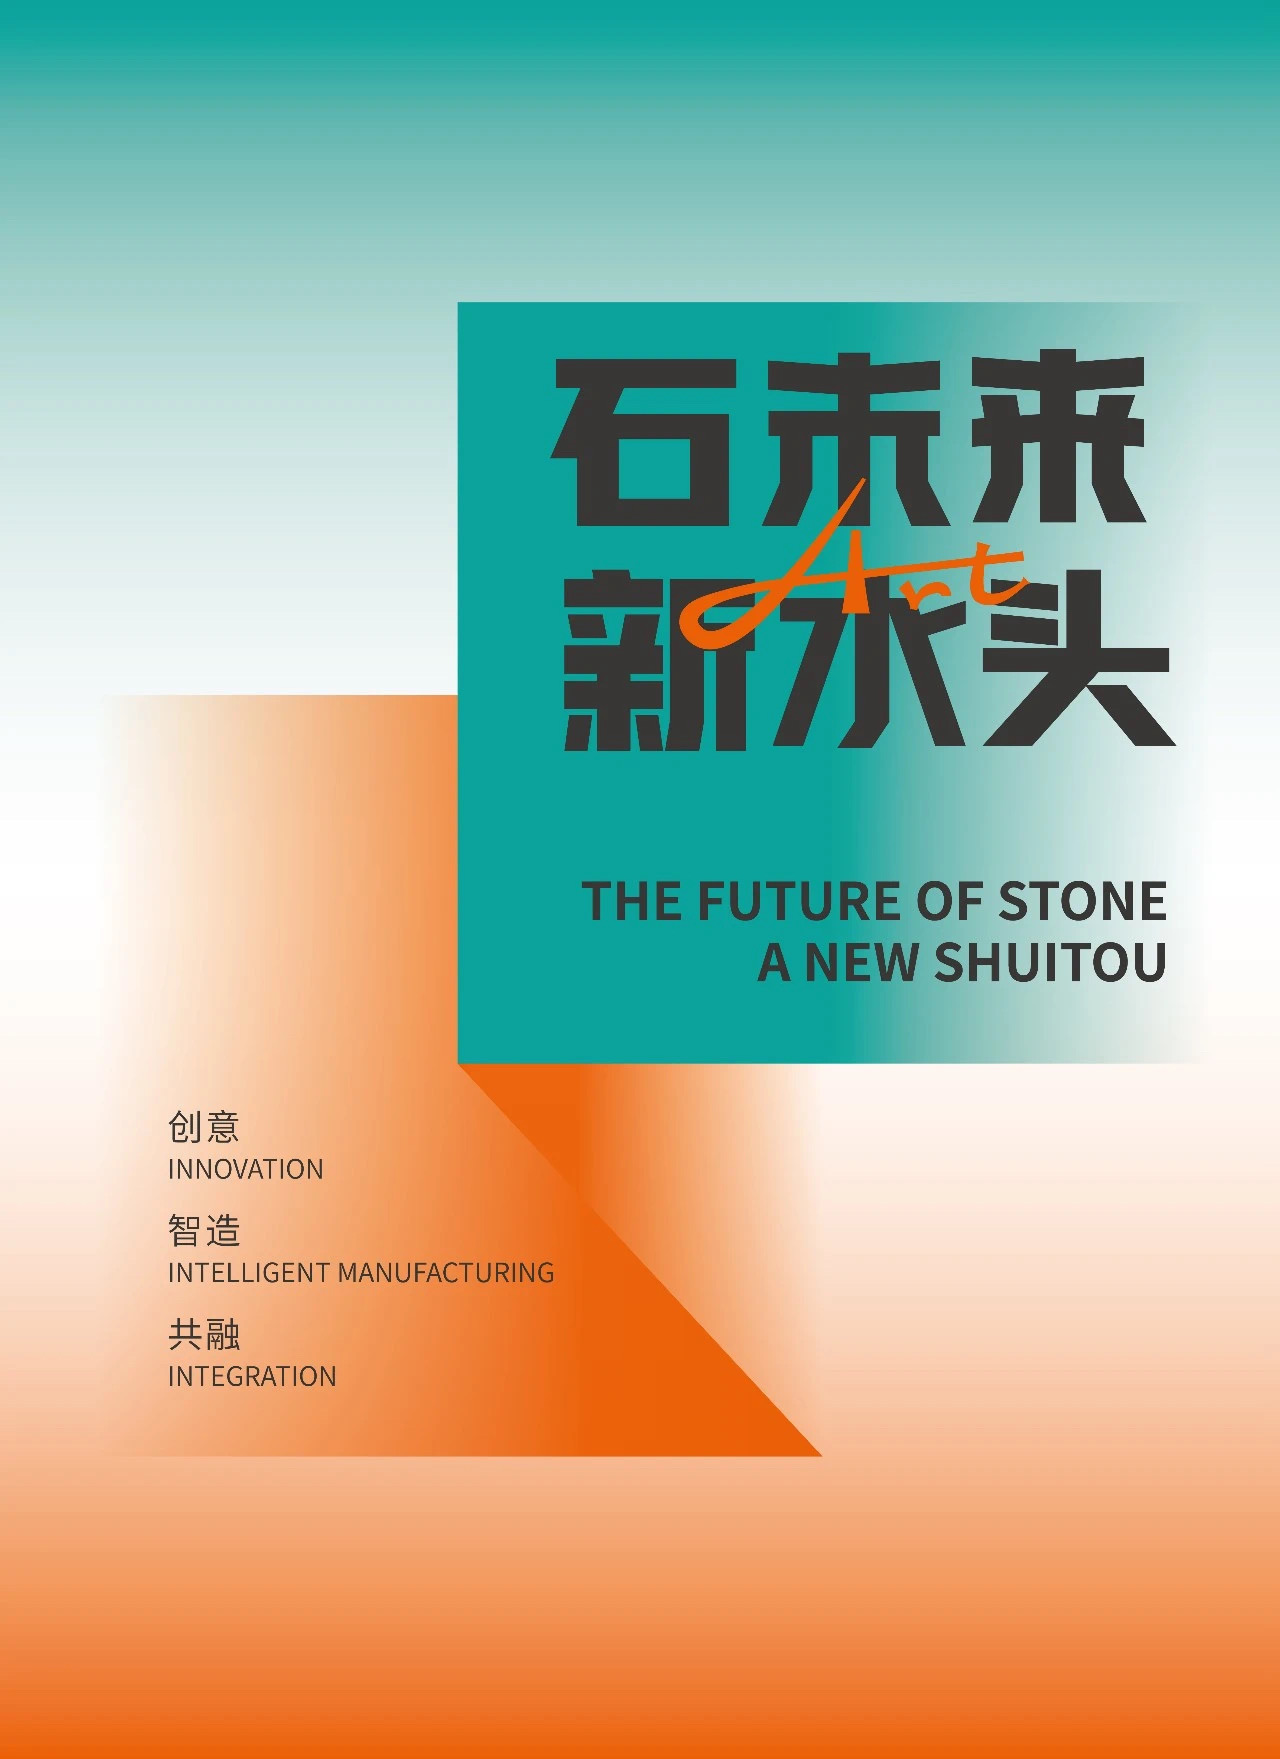 Tekintse át a 2023-as Shuitou-kőkiállítást